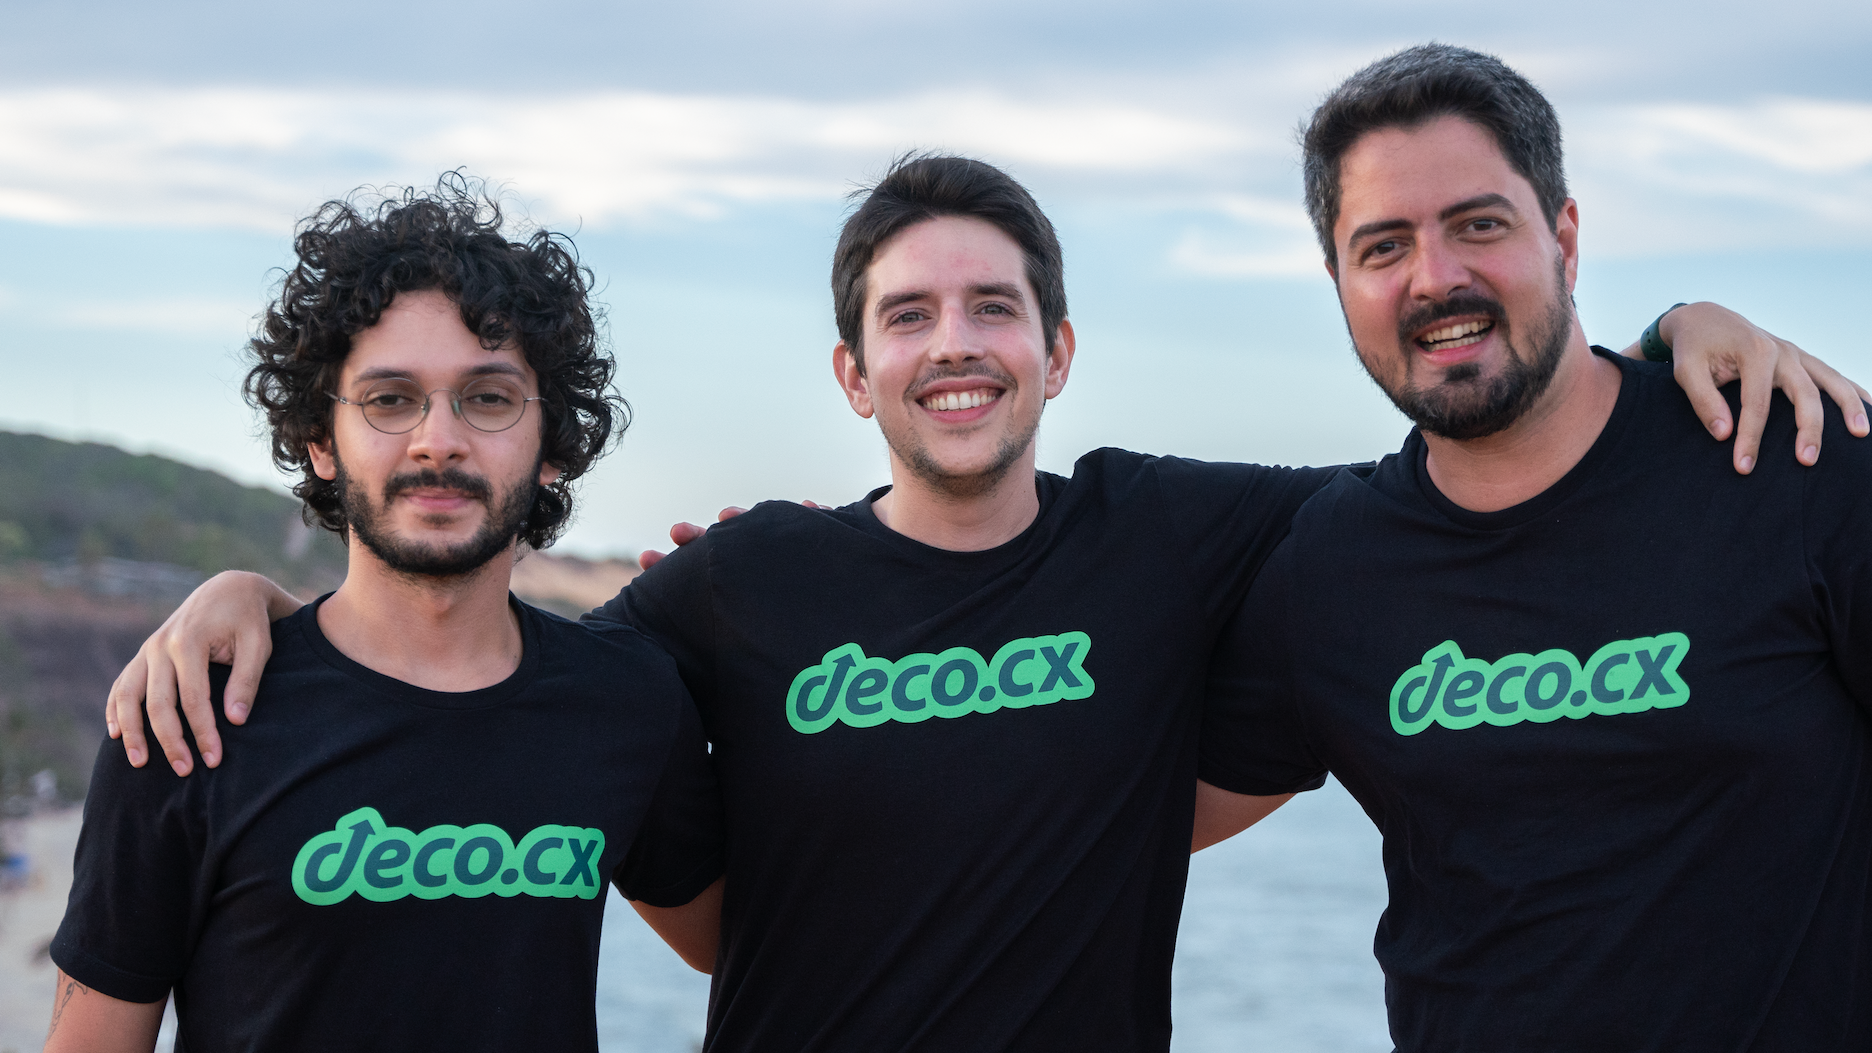 Deco.cx, интернет-торговля, платформа разработки фронтенда с открытым кодом